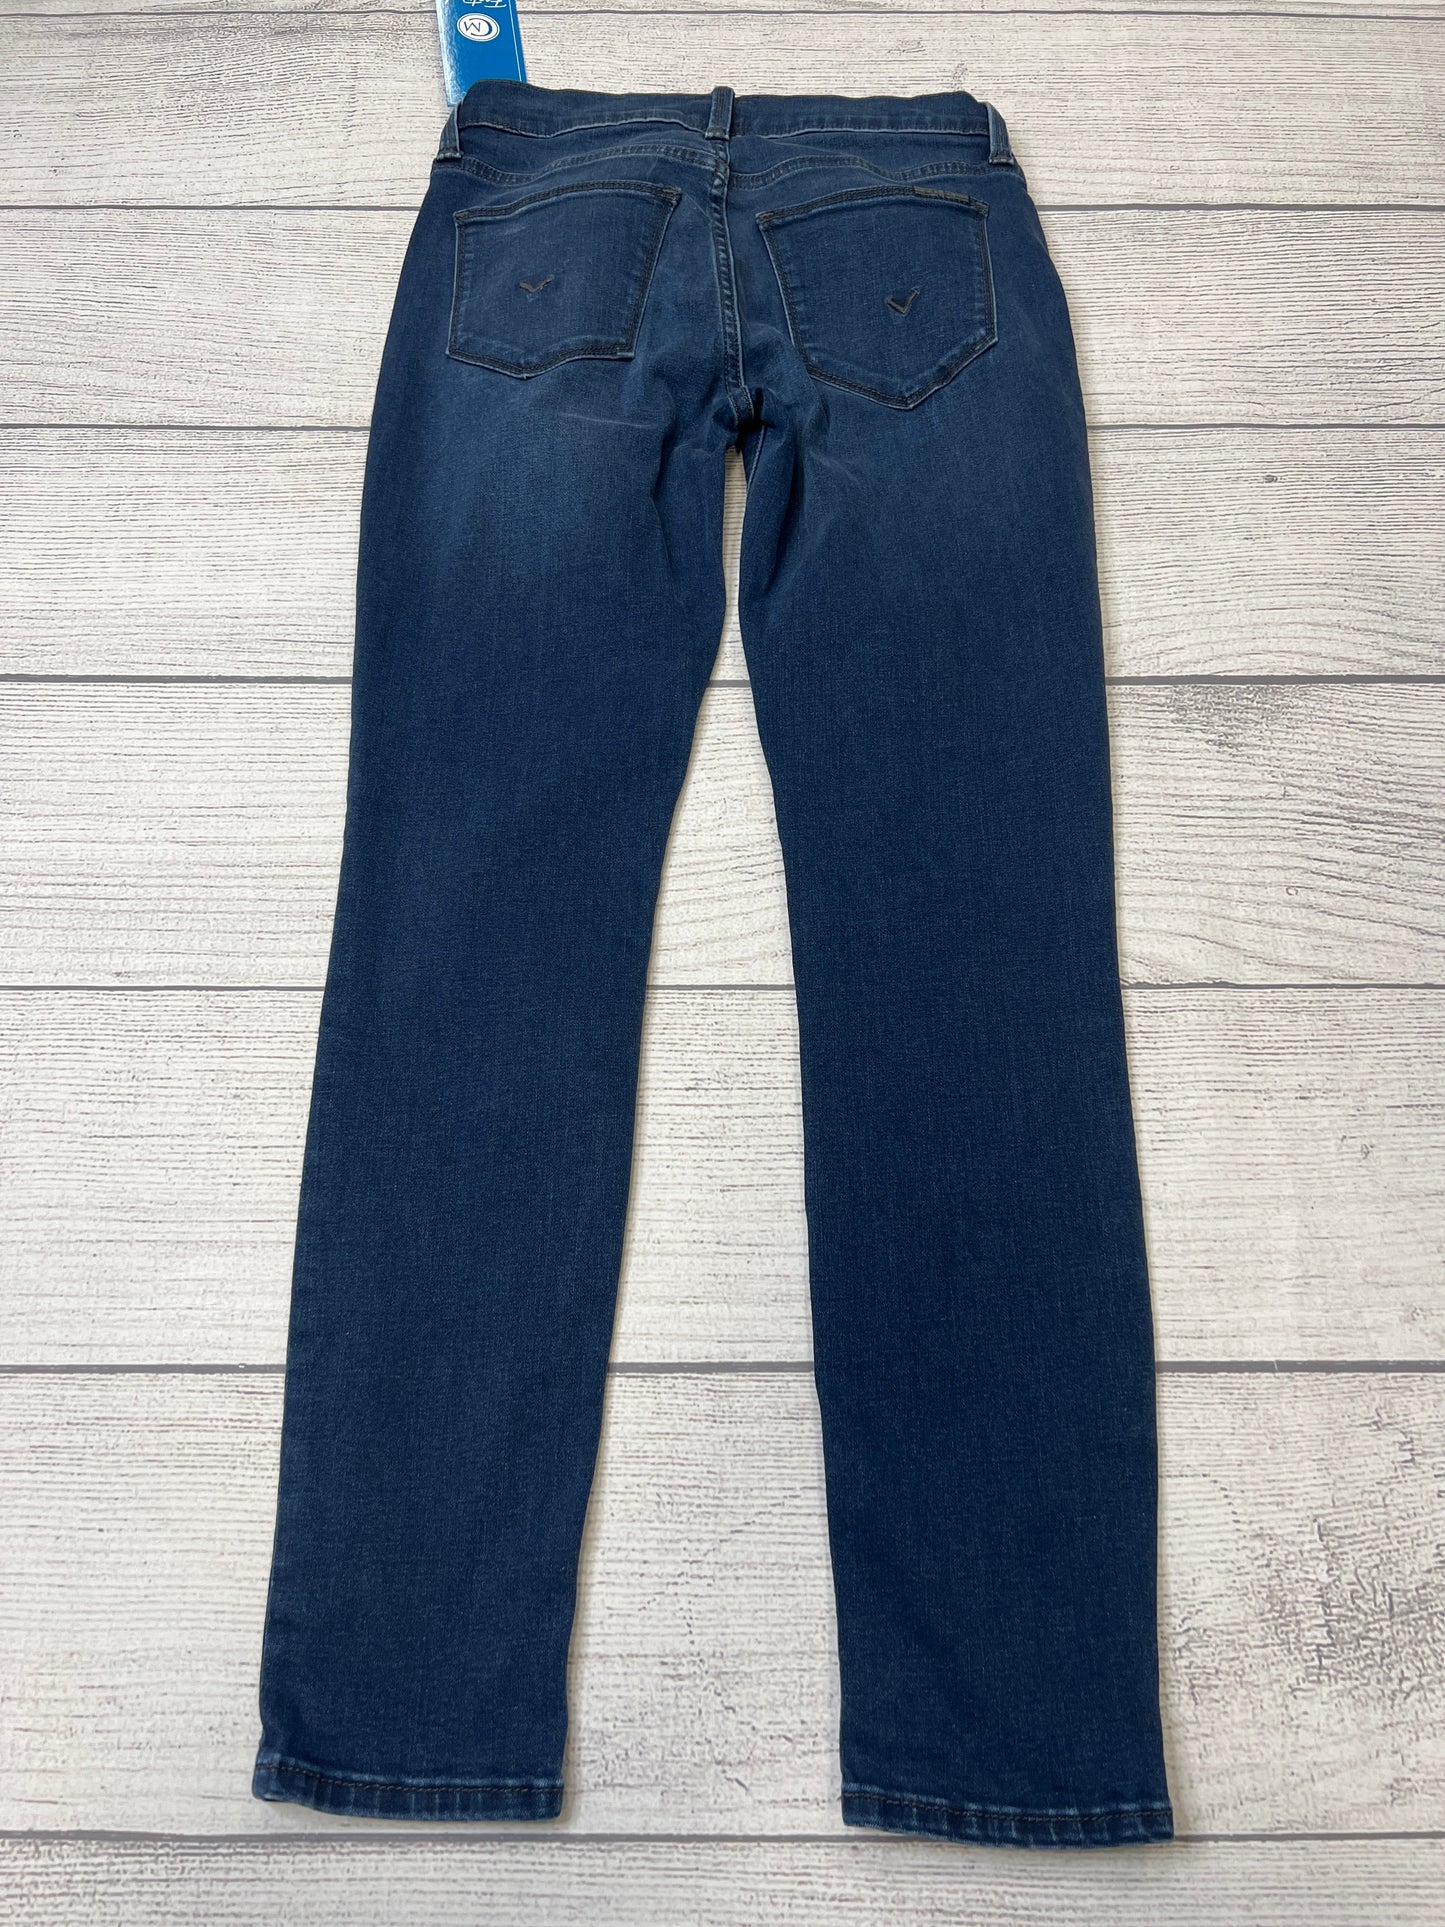 Jeans Designer By Hudson  Size: 0/25